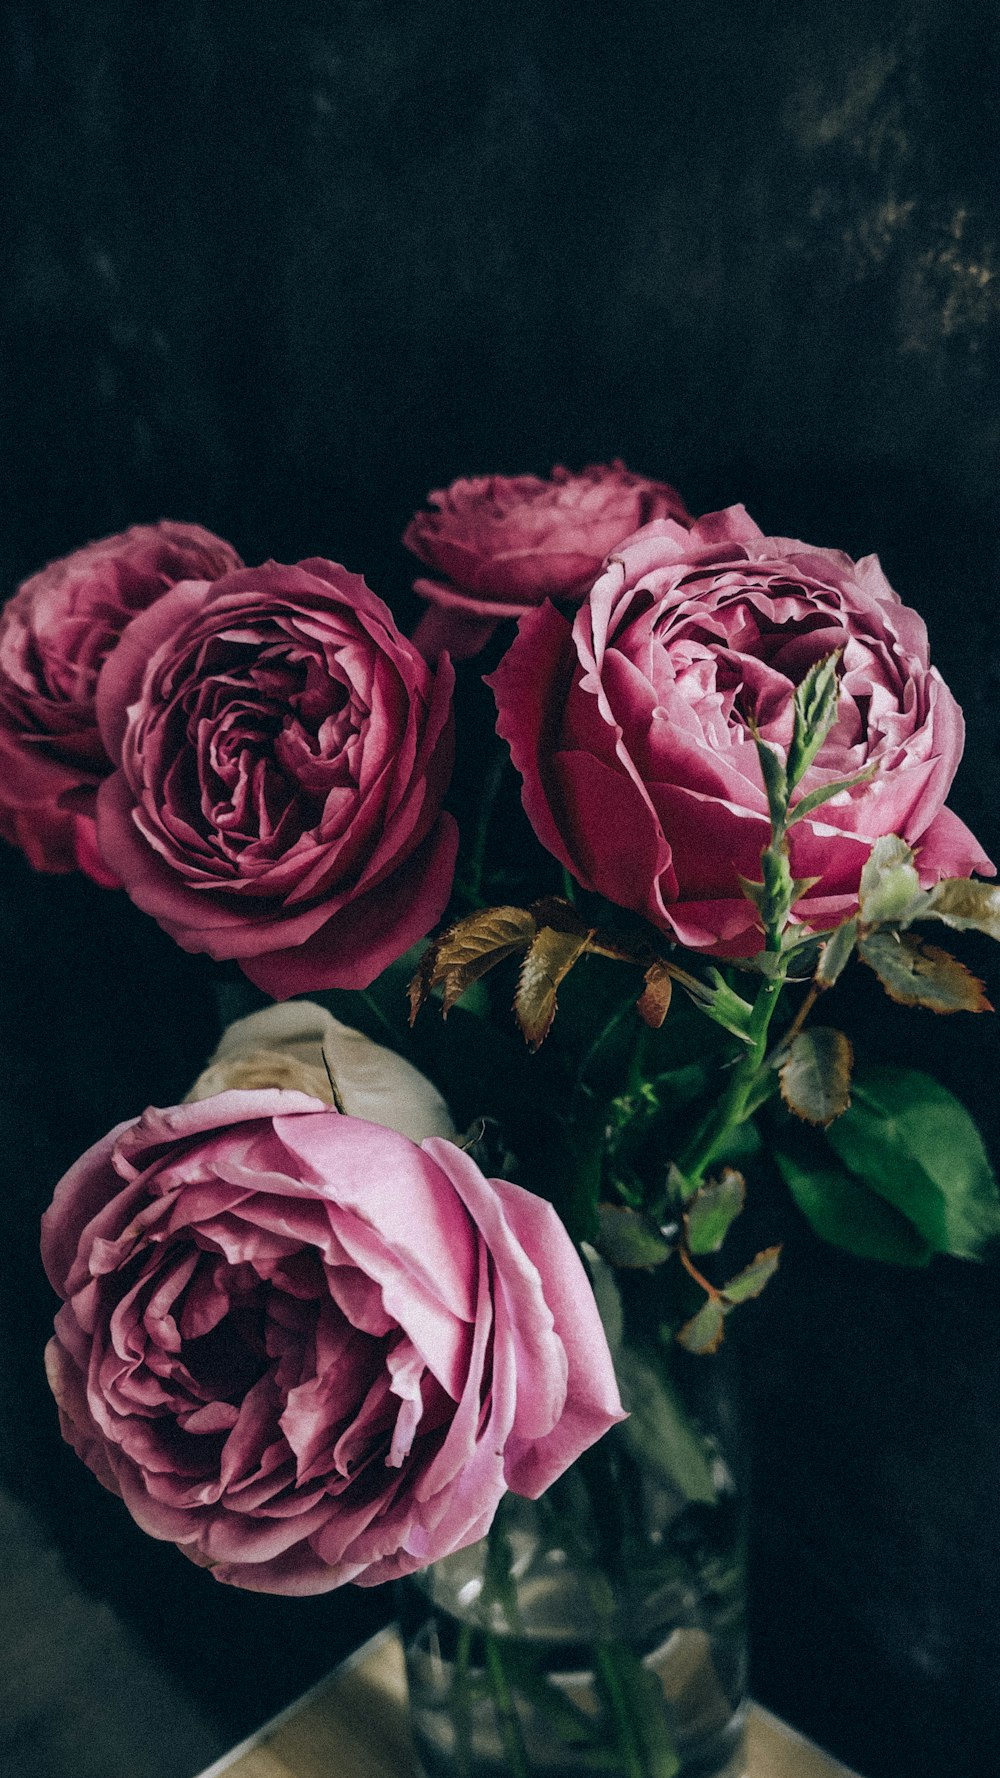 Vintage Rose Pictures | Download Free Images on Unsplash